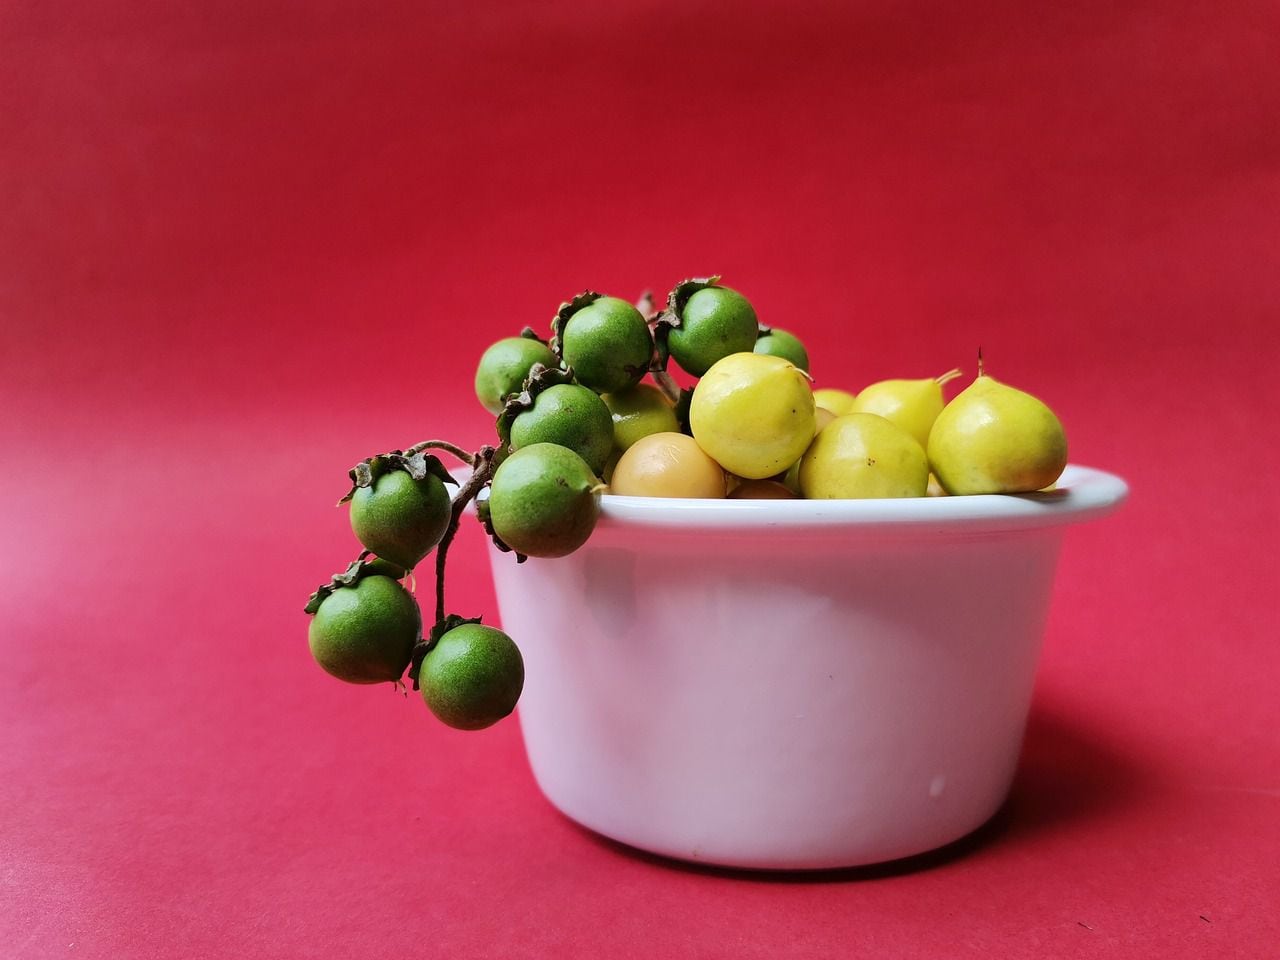 El nanche es una fruta originaria de México que trae varios beneficios